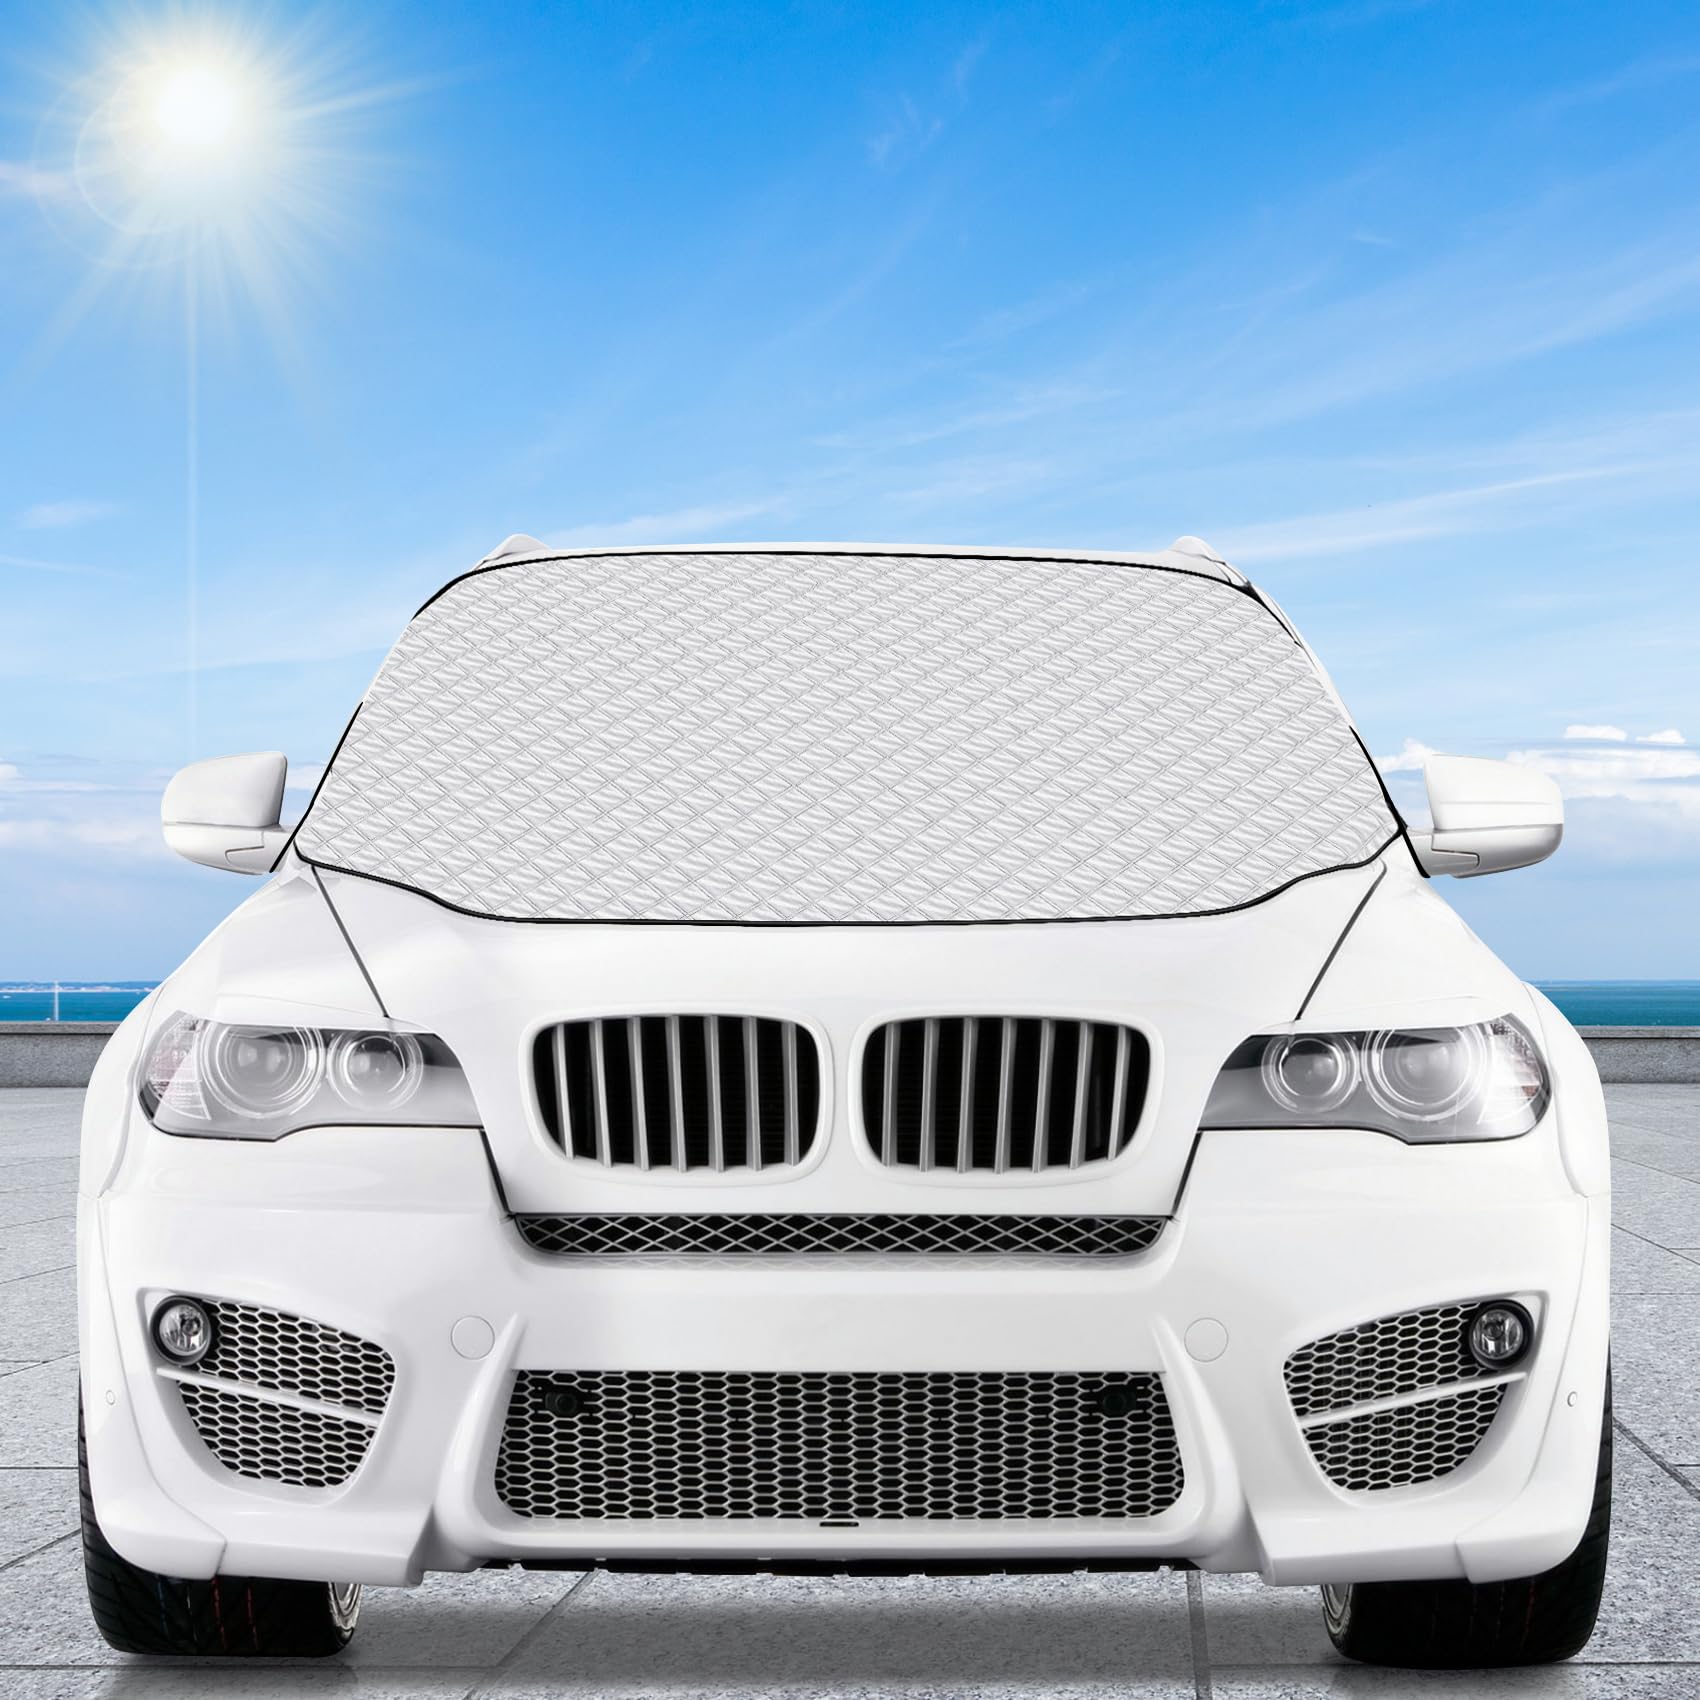 Feebee Frostschutz Auto Frontscheibe, Frontscheibenabdeckung Magnetische 183 x 116cm, Windschutzscheibe Abdeckung außen mit 5 Magneten, gegen UV, Sonne, Staub, Schnee, Frost von Feebee